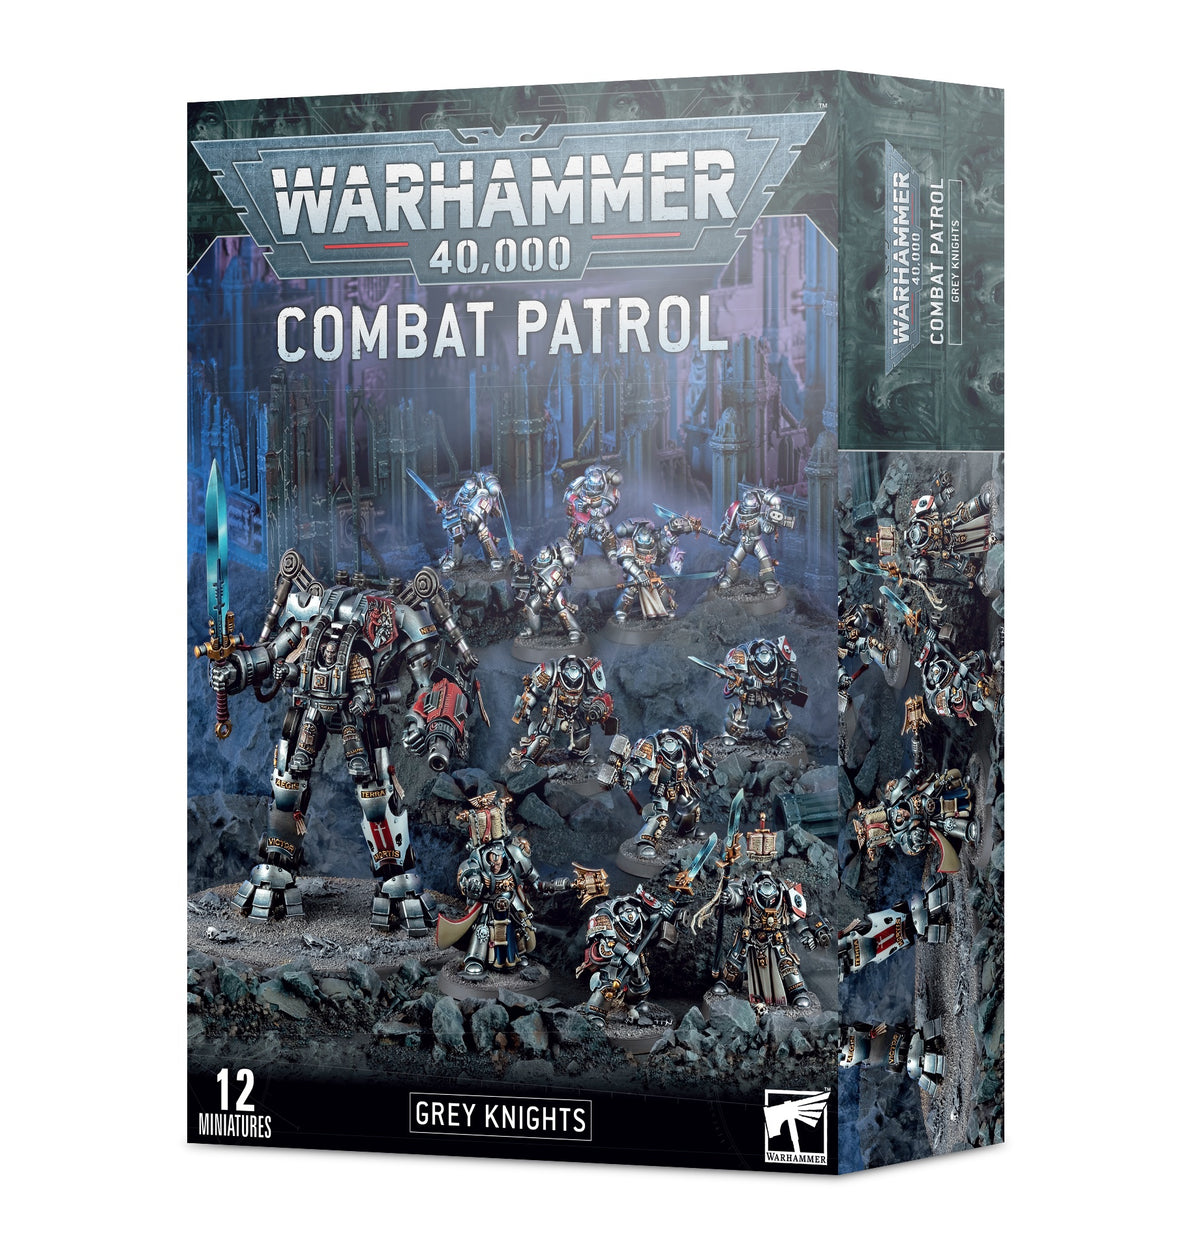 Combat Patrol – Grey Knights (57-14)